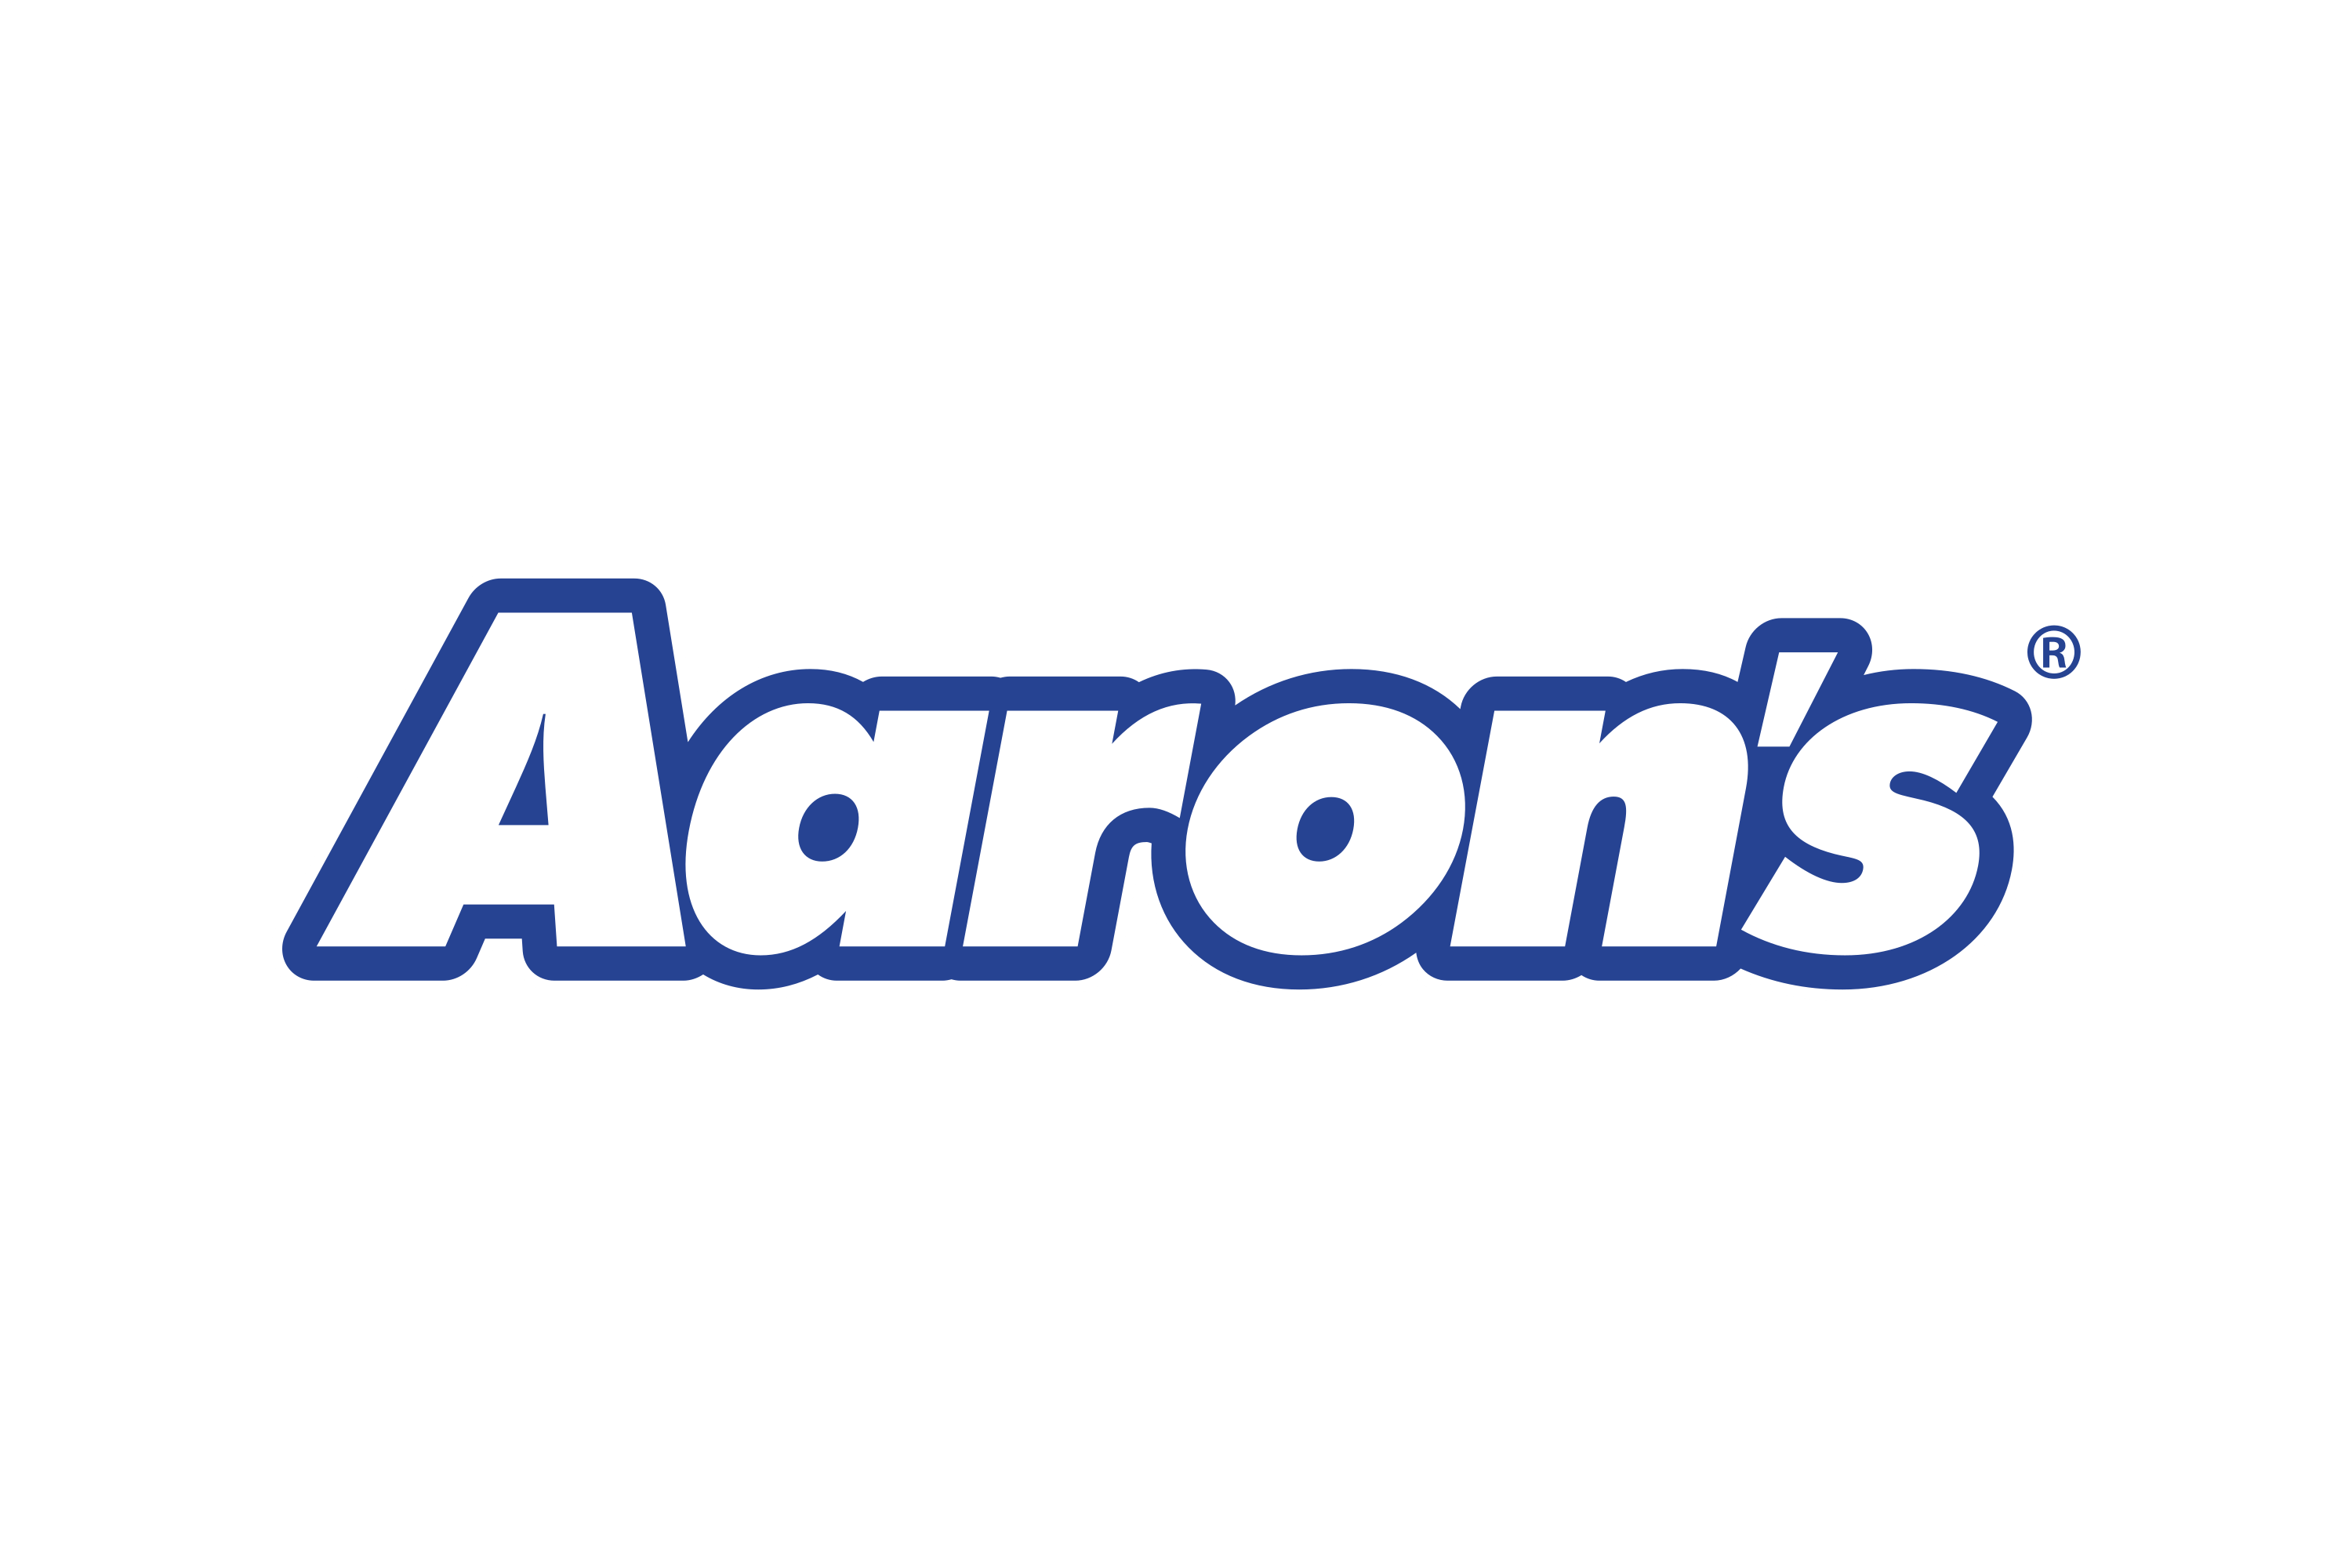 Inc logo. Aaron's Inc logo. Inc лого вектор. Inc News лого. Aarons магазин.